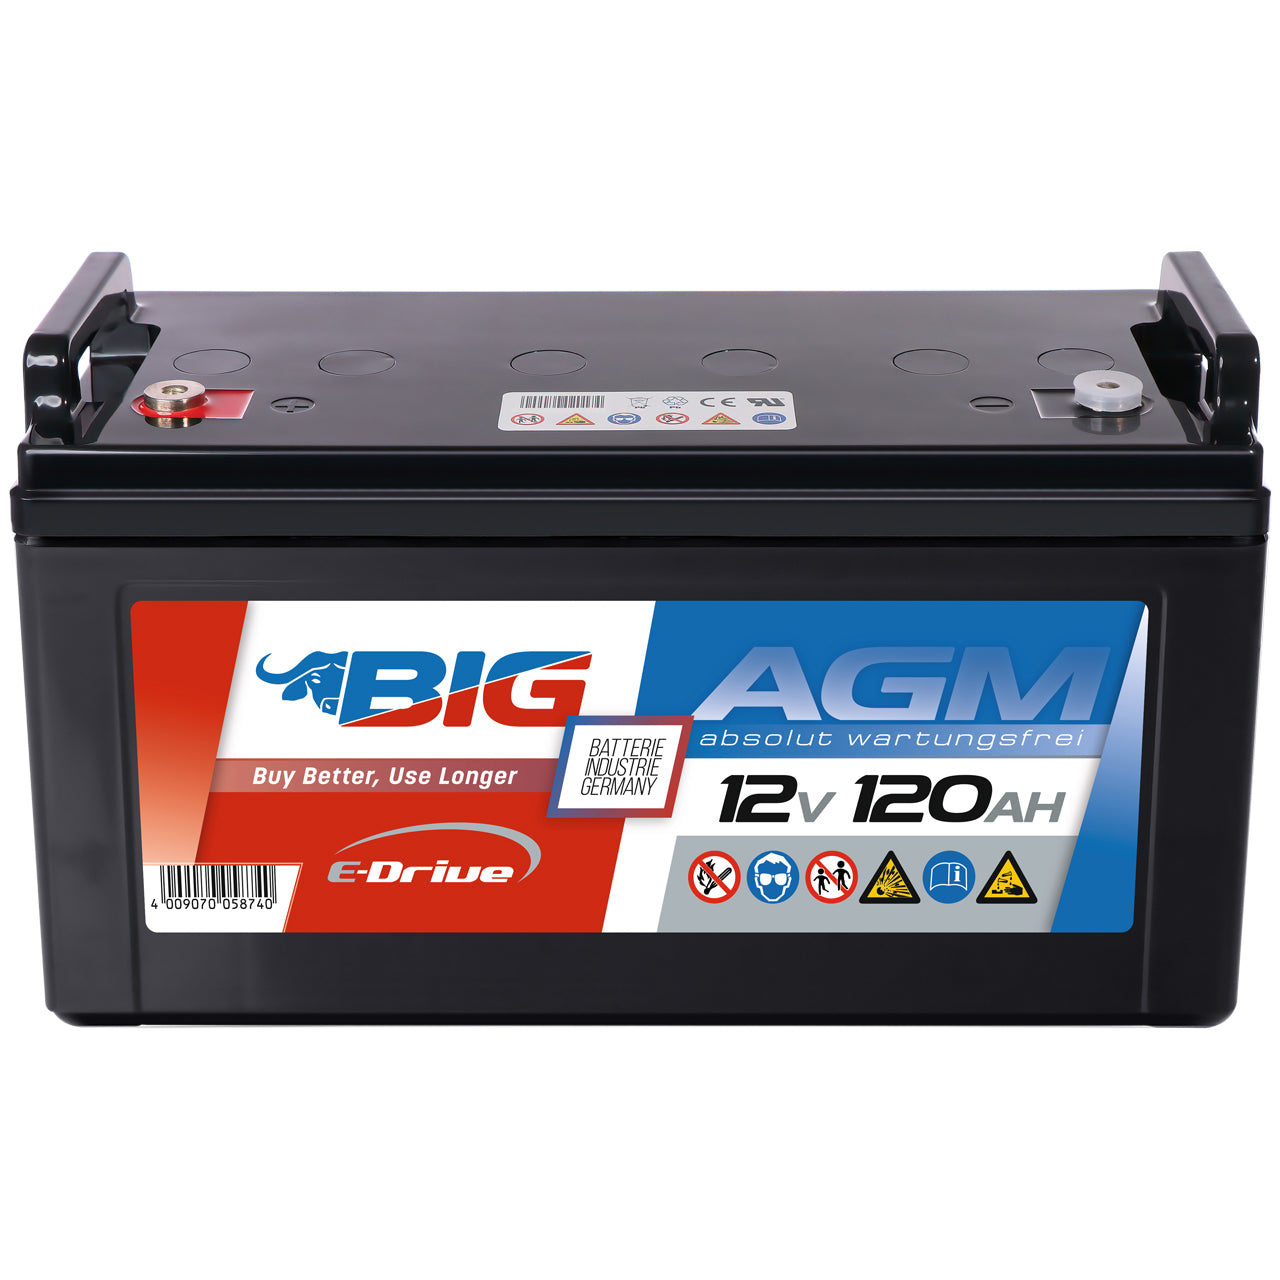 BIG E-Drive AGM 12V 120Ah